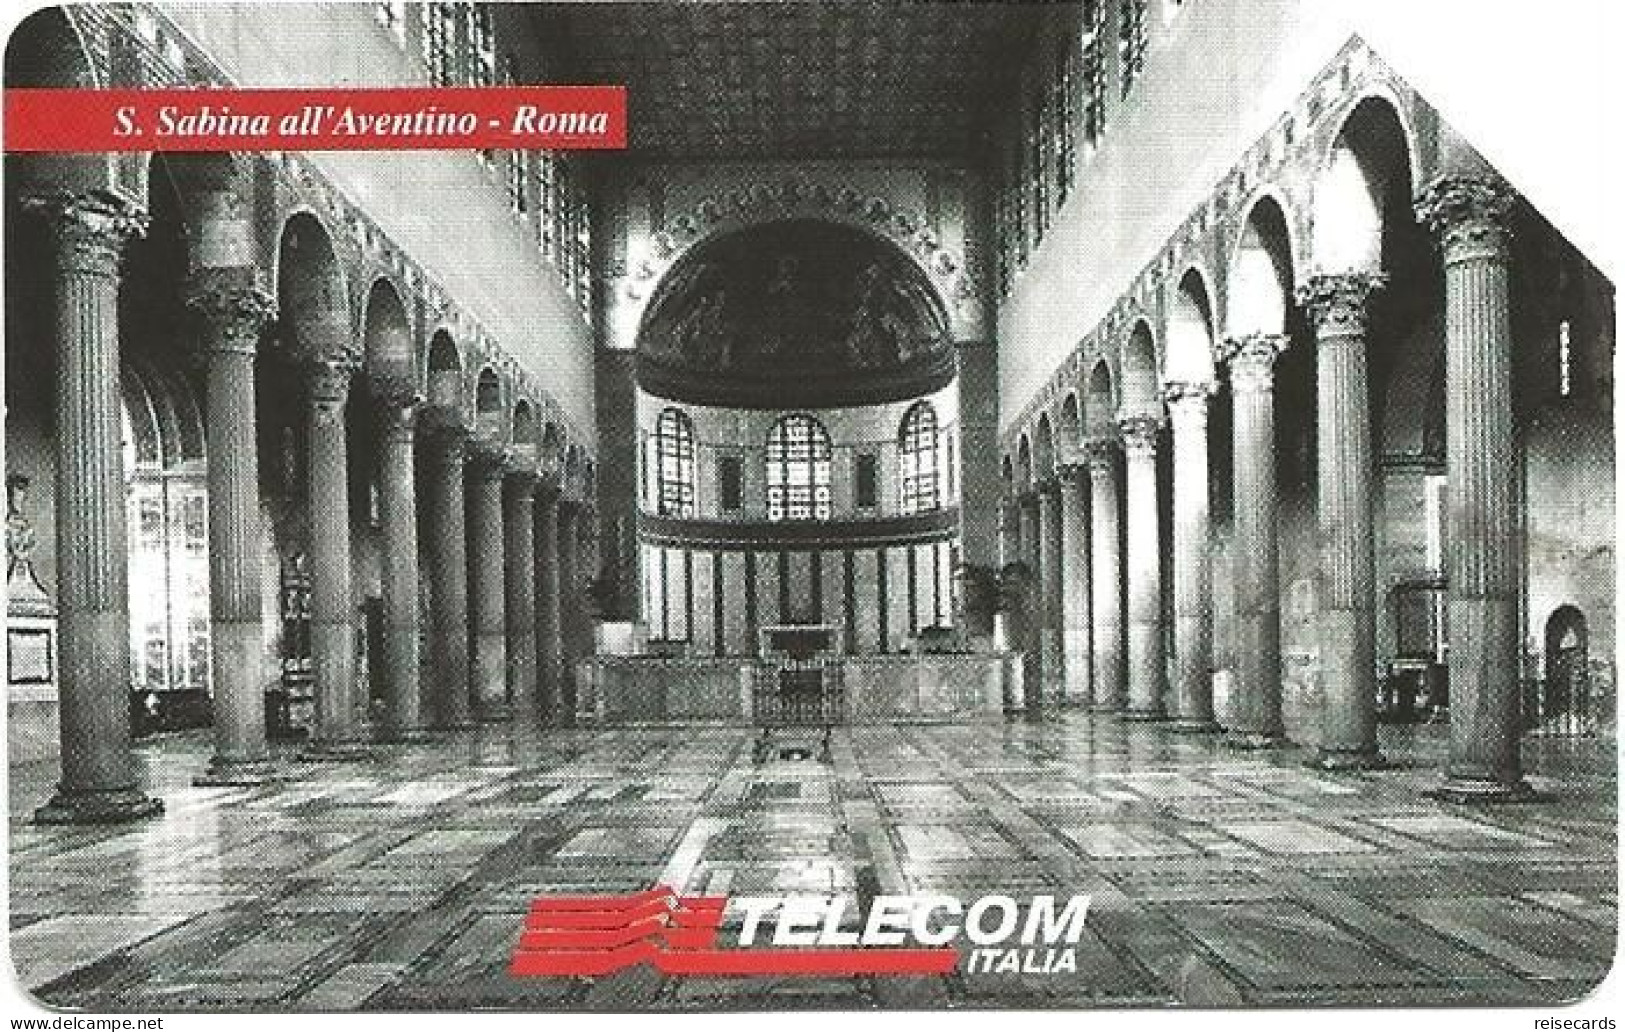 Italy: Telecom Italia - Il Culto Dell'Arte, S. Sabina All'Aventino Roma - Públicas  Publicitarias